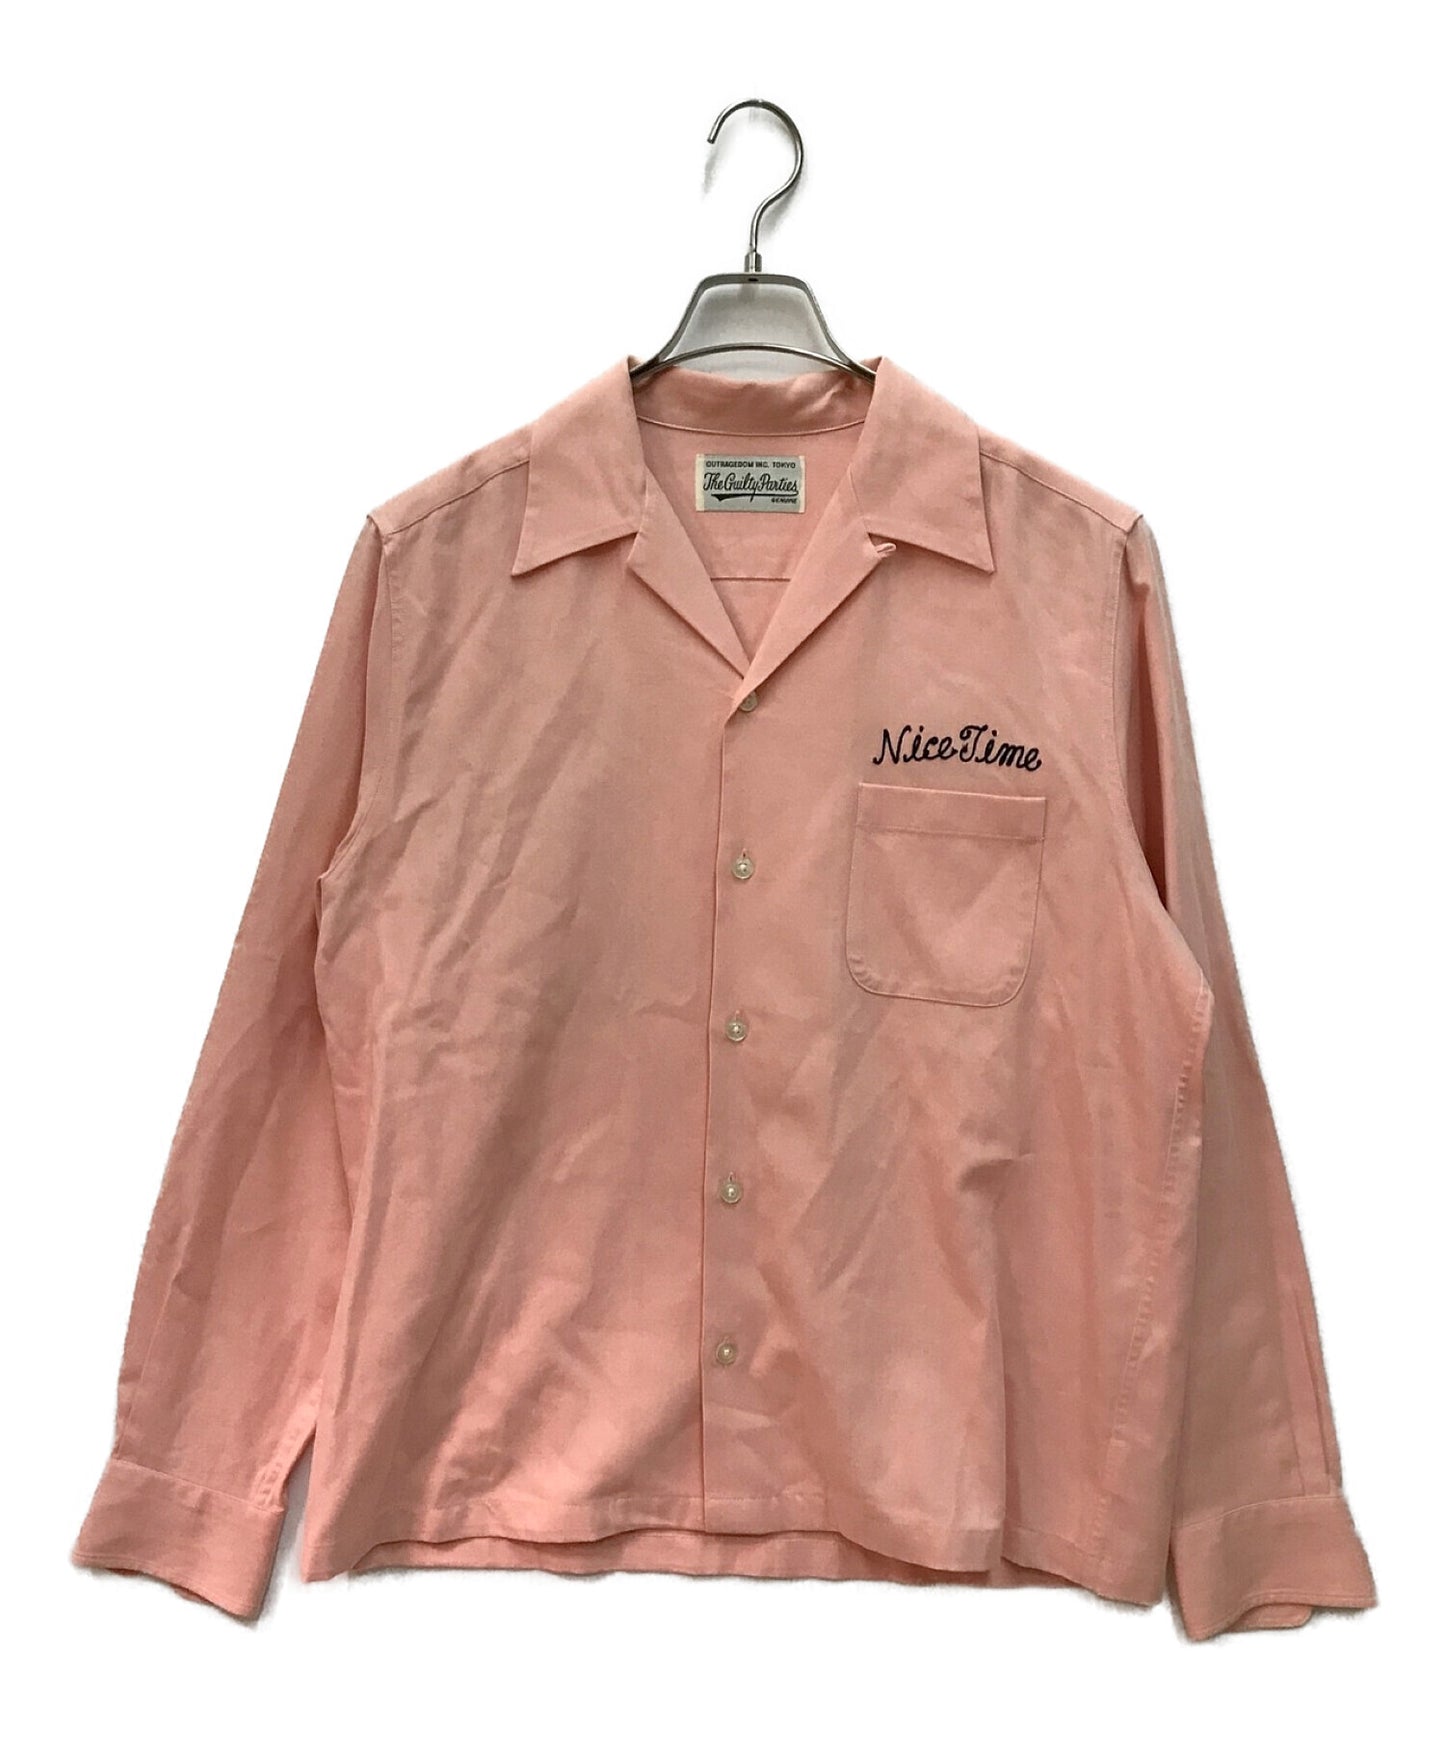 [Pre-owned] WACKO MARIA 50'S SHIRT L/S long sleeve shirt open collar shirt bowling shirt